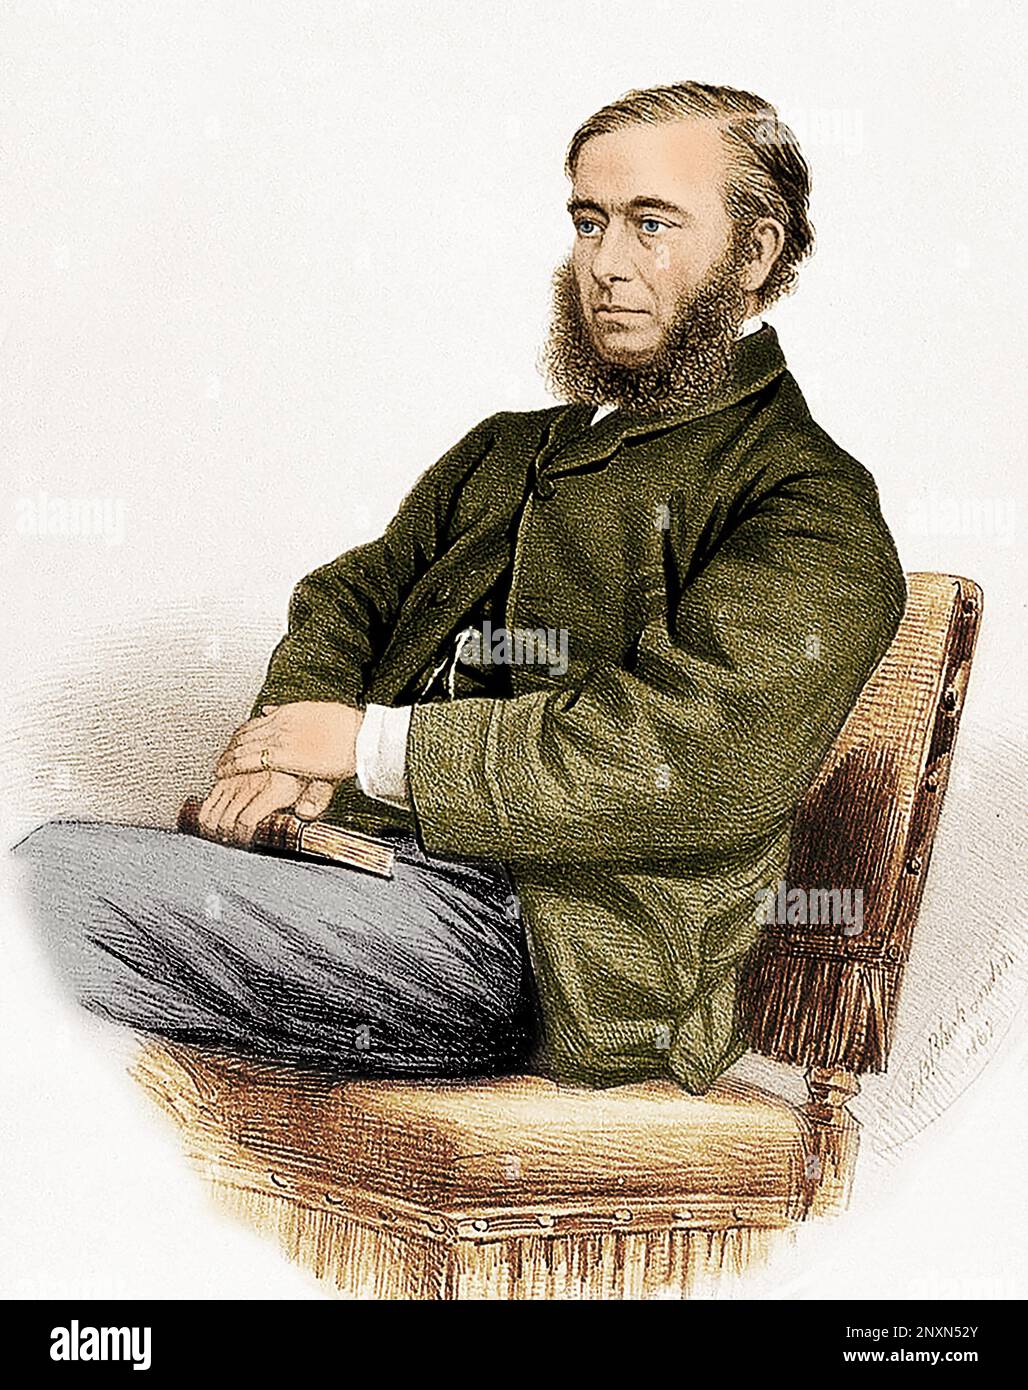 William Budd (1811-1880), médico y epidemiólogo inglés que comprendió particularmente la transmisión del cólera y la fiebre tifoidea. Coloreado. Foto de stock